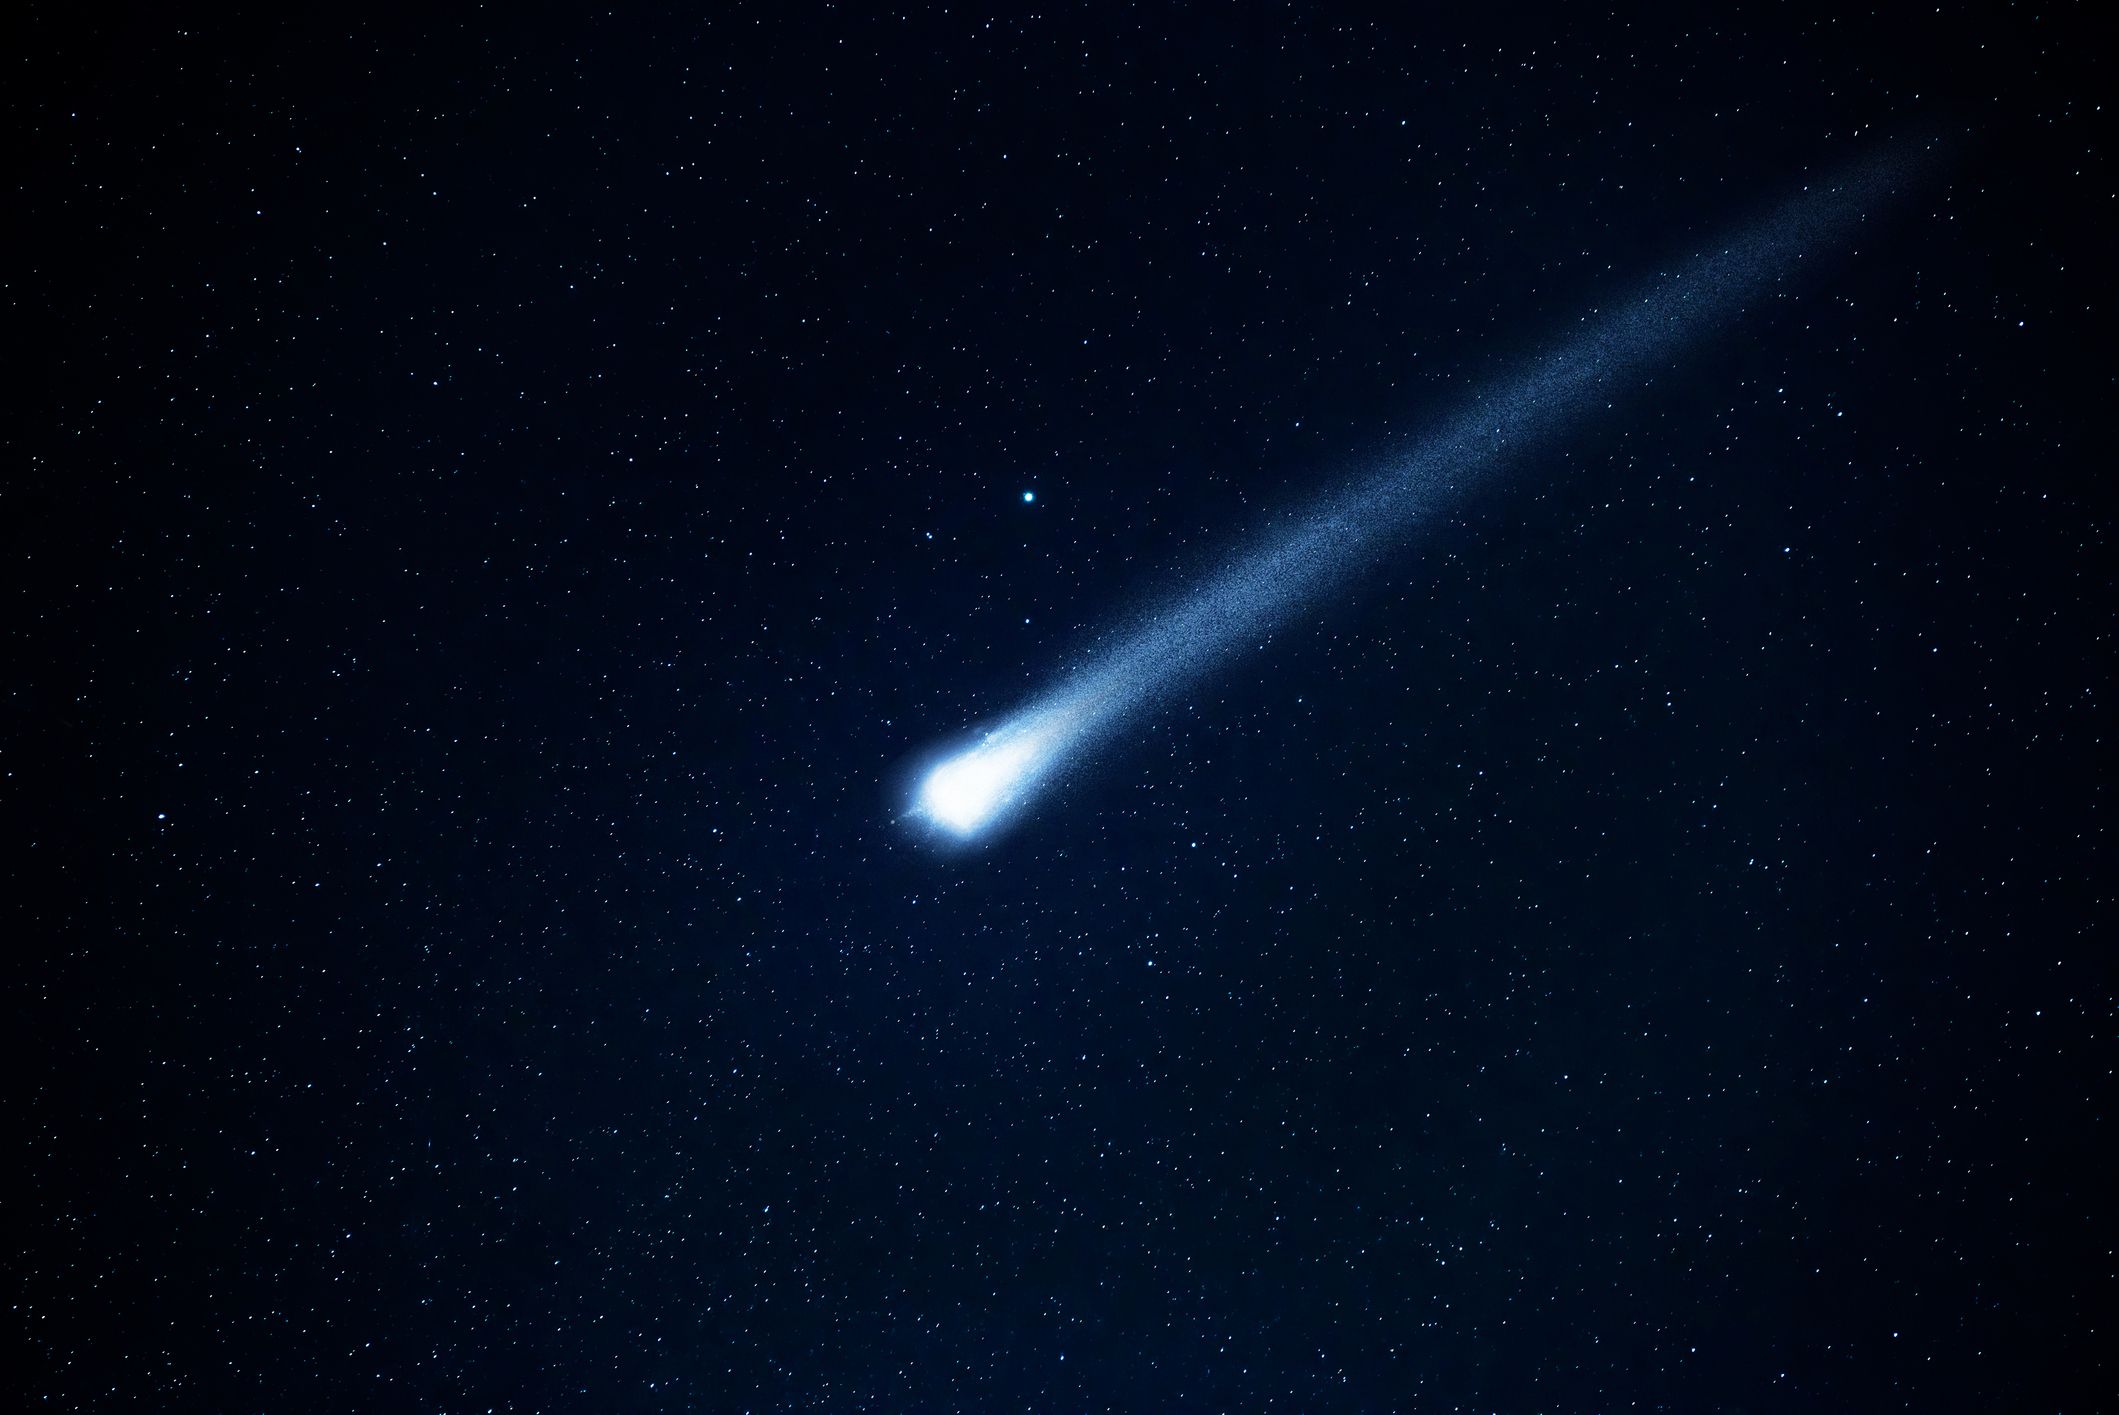 meteor meteoroid meteorite asteroid comet